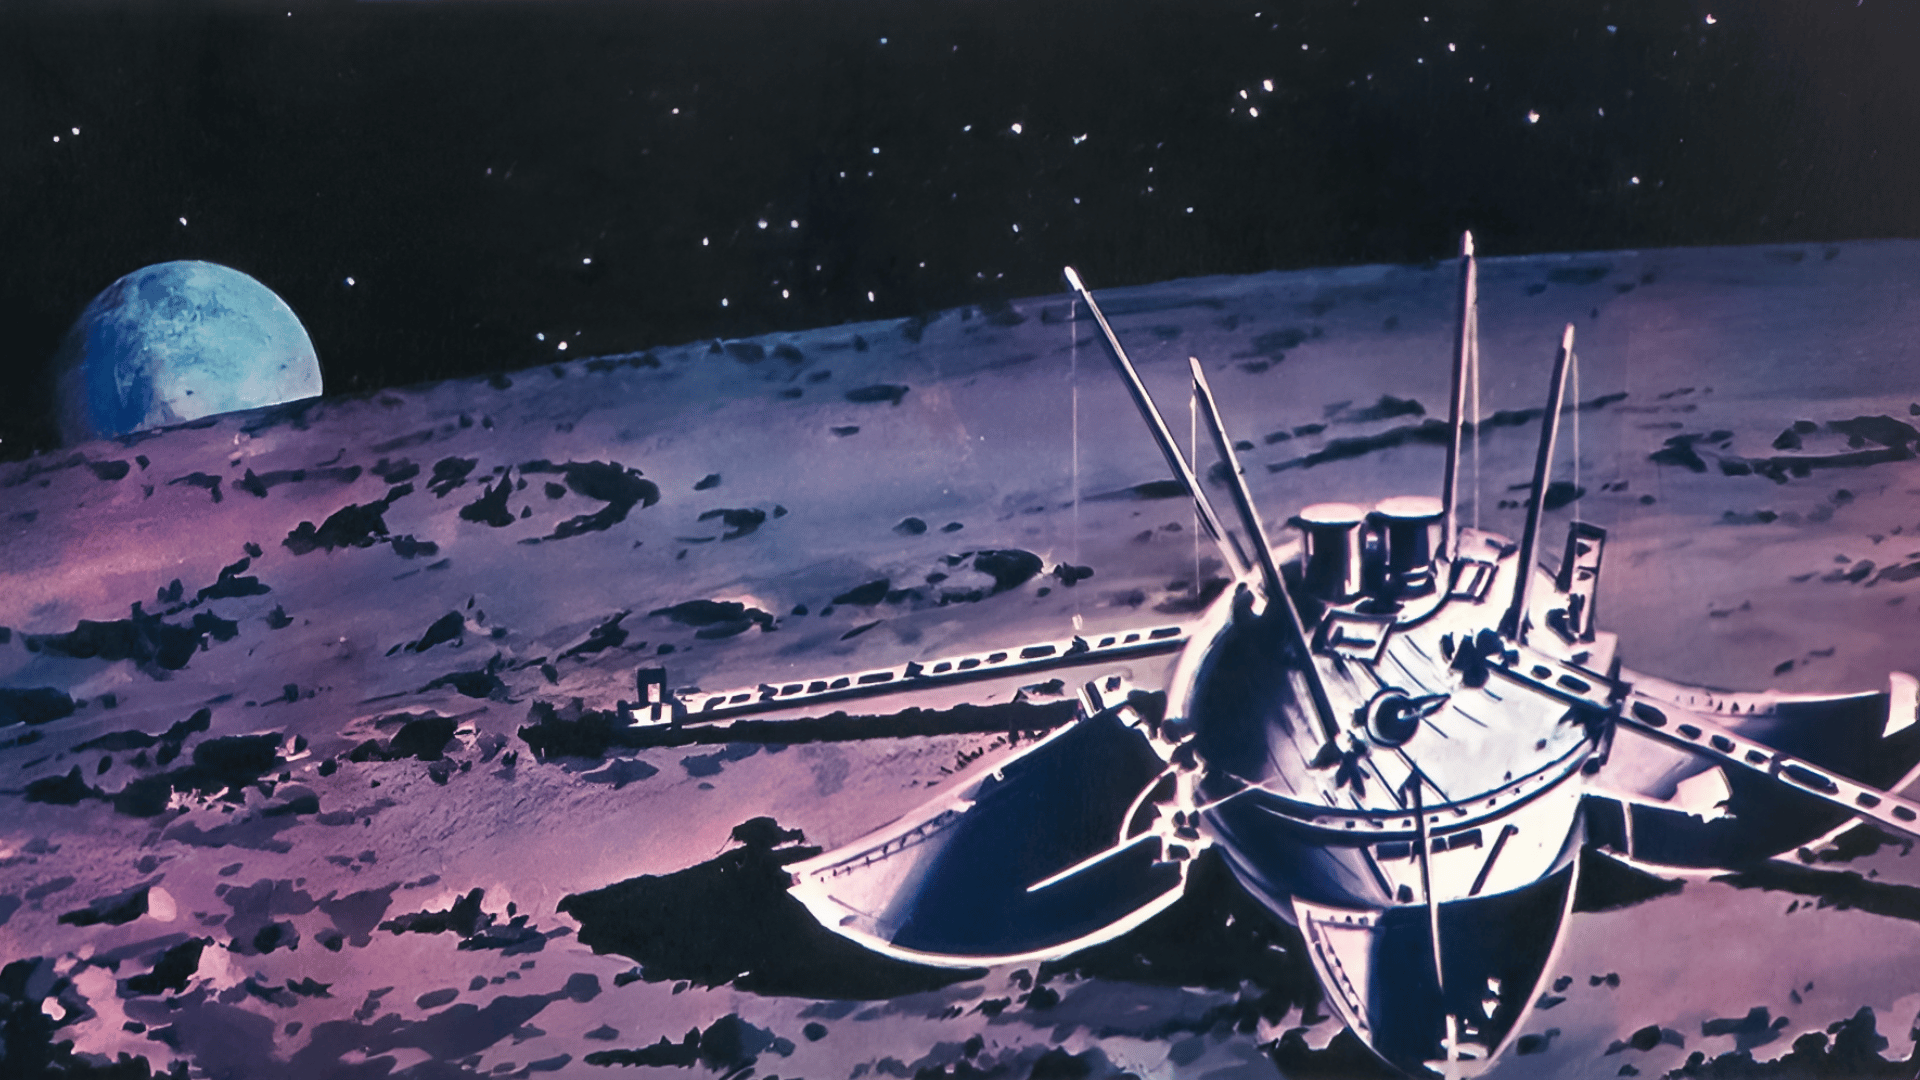 Корабль на поверхности луны. Луна-9 автоматическая межпланетная станция. Советская АМС «Луна - 9». 1966 — СССР осуществил успешный запуск межпланетной станции «Луна-13».. Станция Луна-9 1966 года.